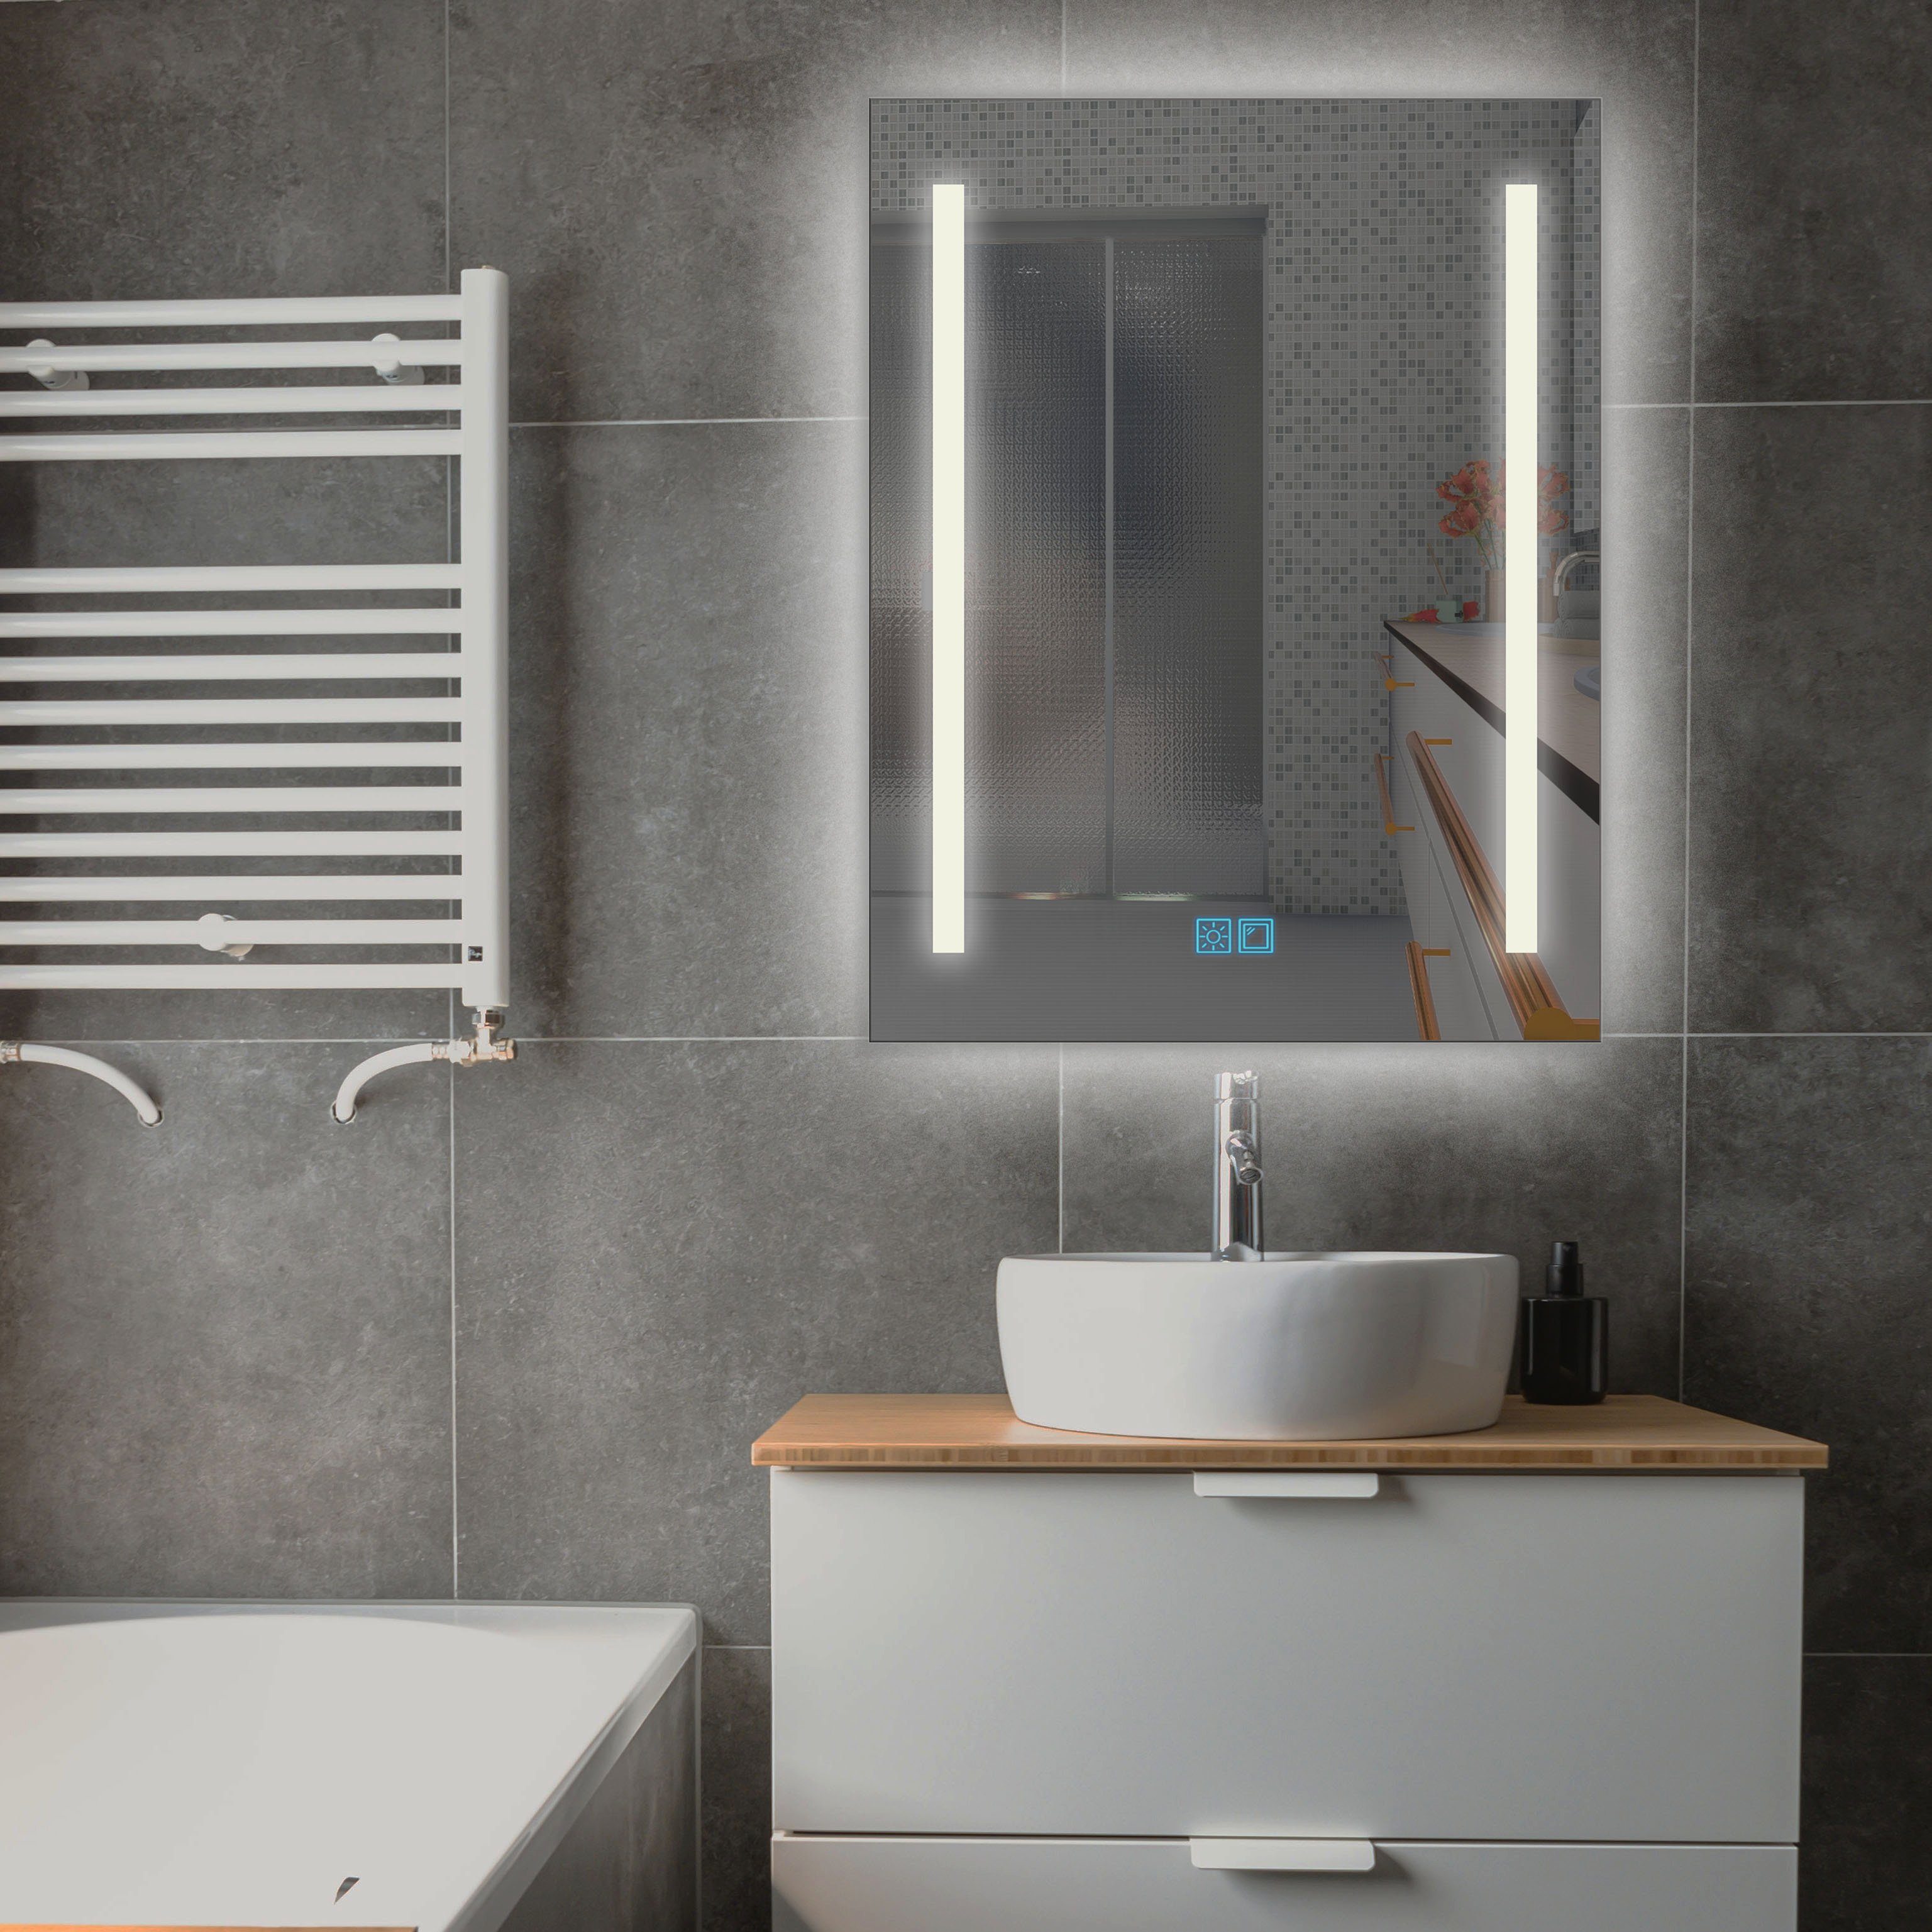 LuxNice LED-Lichtspiegel »Baldur S3«, LED Spiegel, Badspiegel mit  Beleuchtung, zusätzliche Hintergrundbeleuchtung, Touch Funktion, IP44,  Kaltweiß online kaufen | OTTO